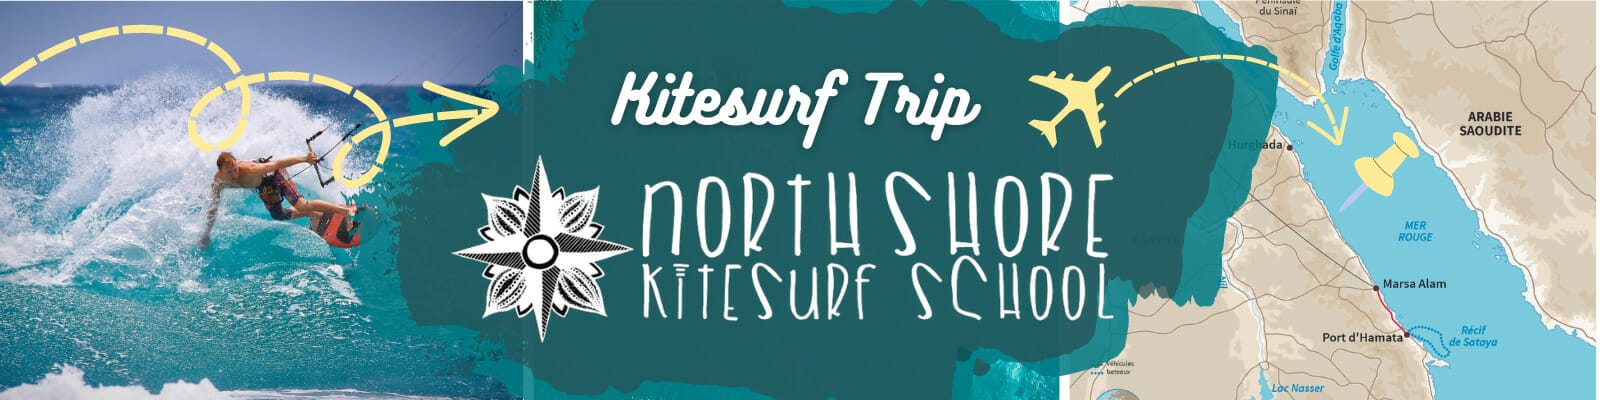 Kitesurf Trip